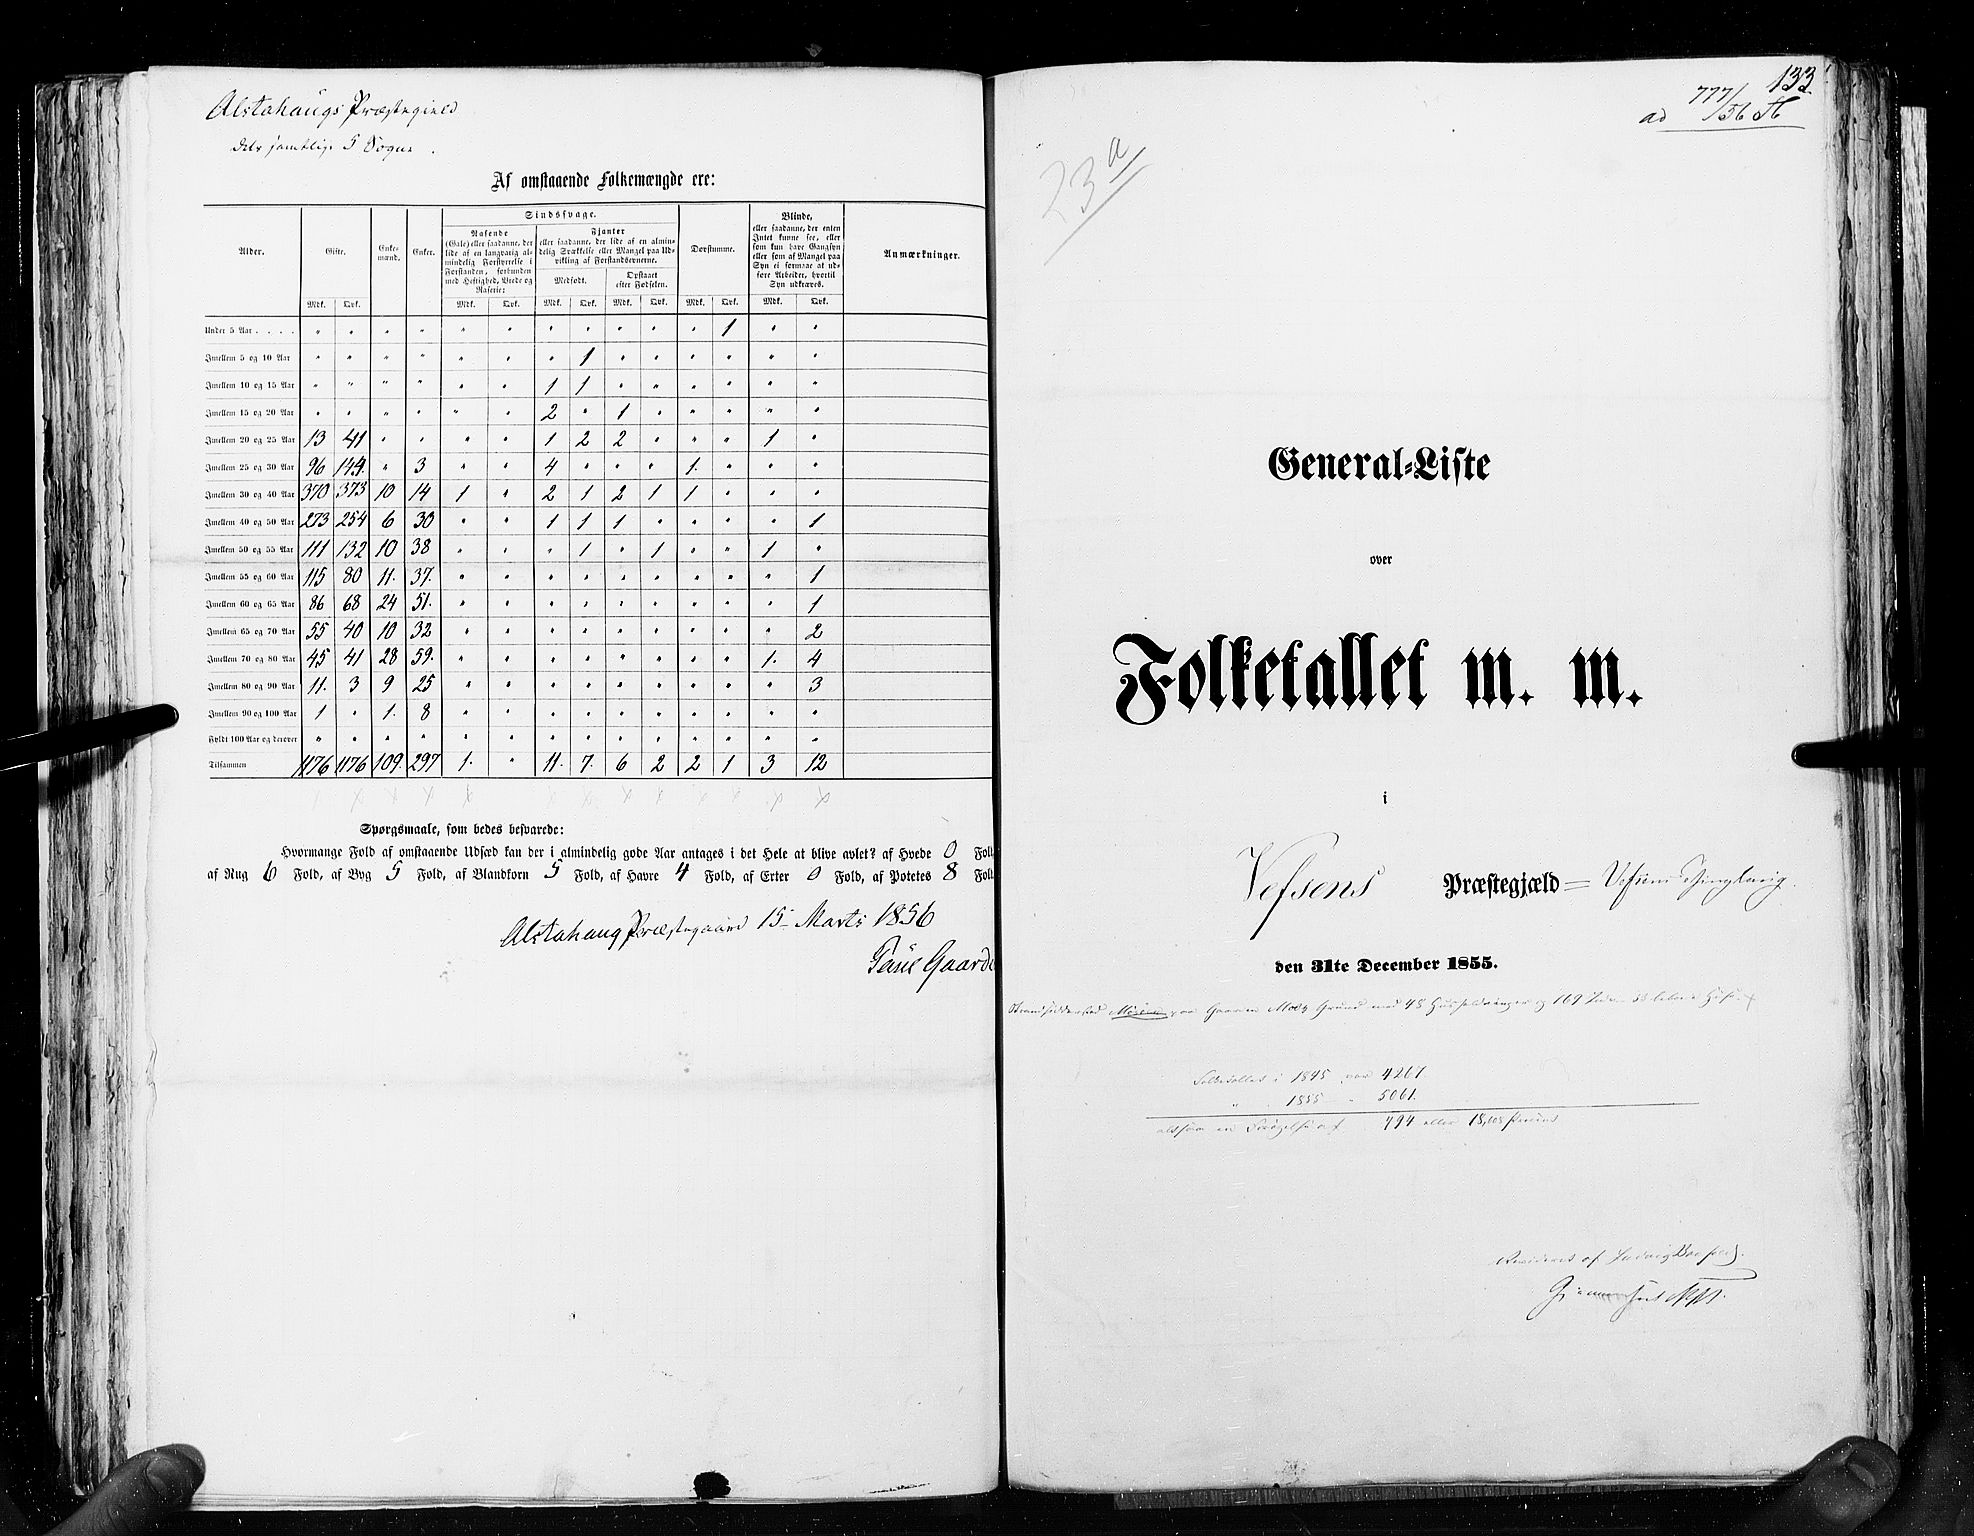 RA, Census 1855, vol. 6A: Nordre Trondhjem amt og Nordland amt, 1855, p. 133